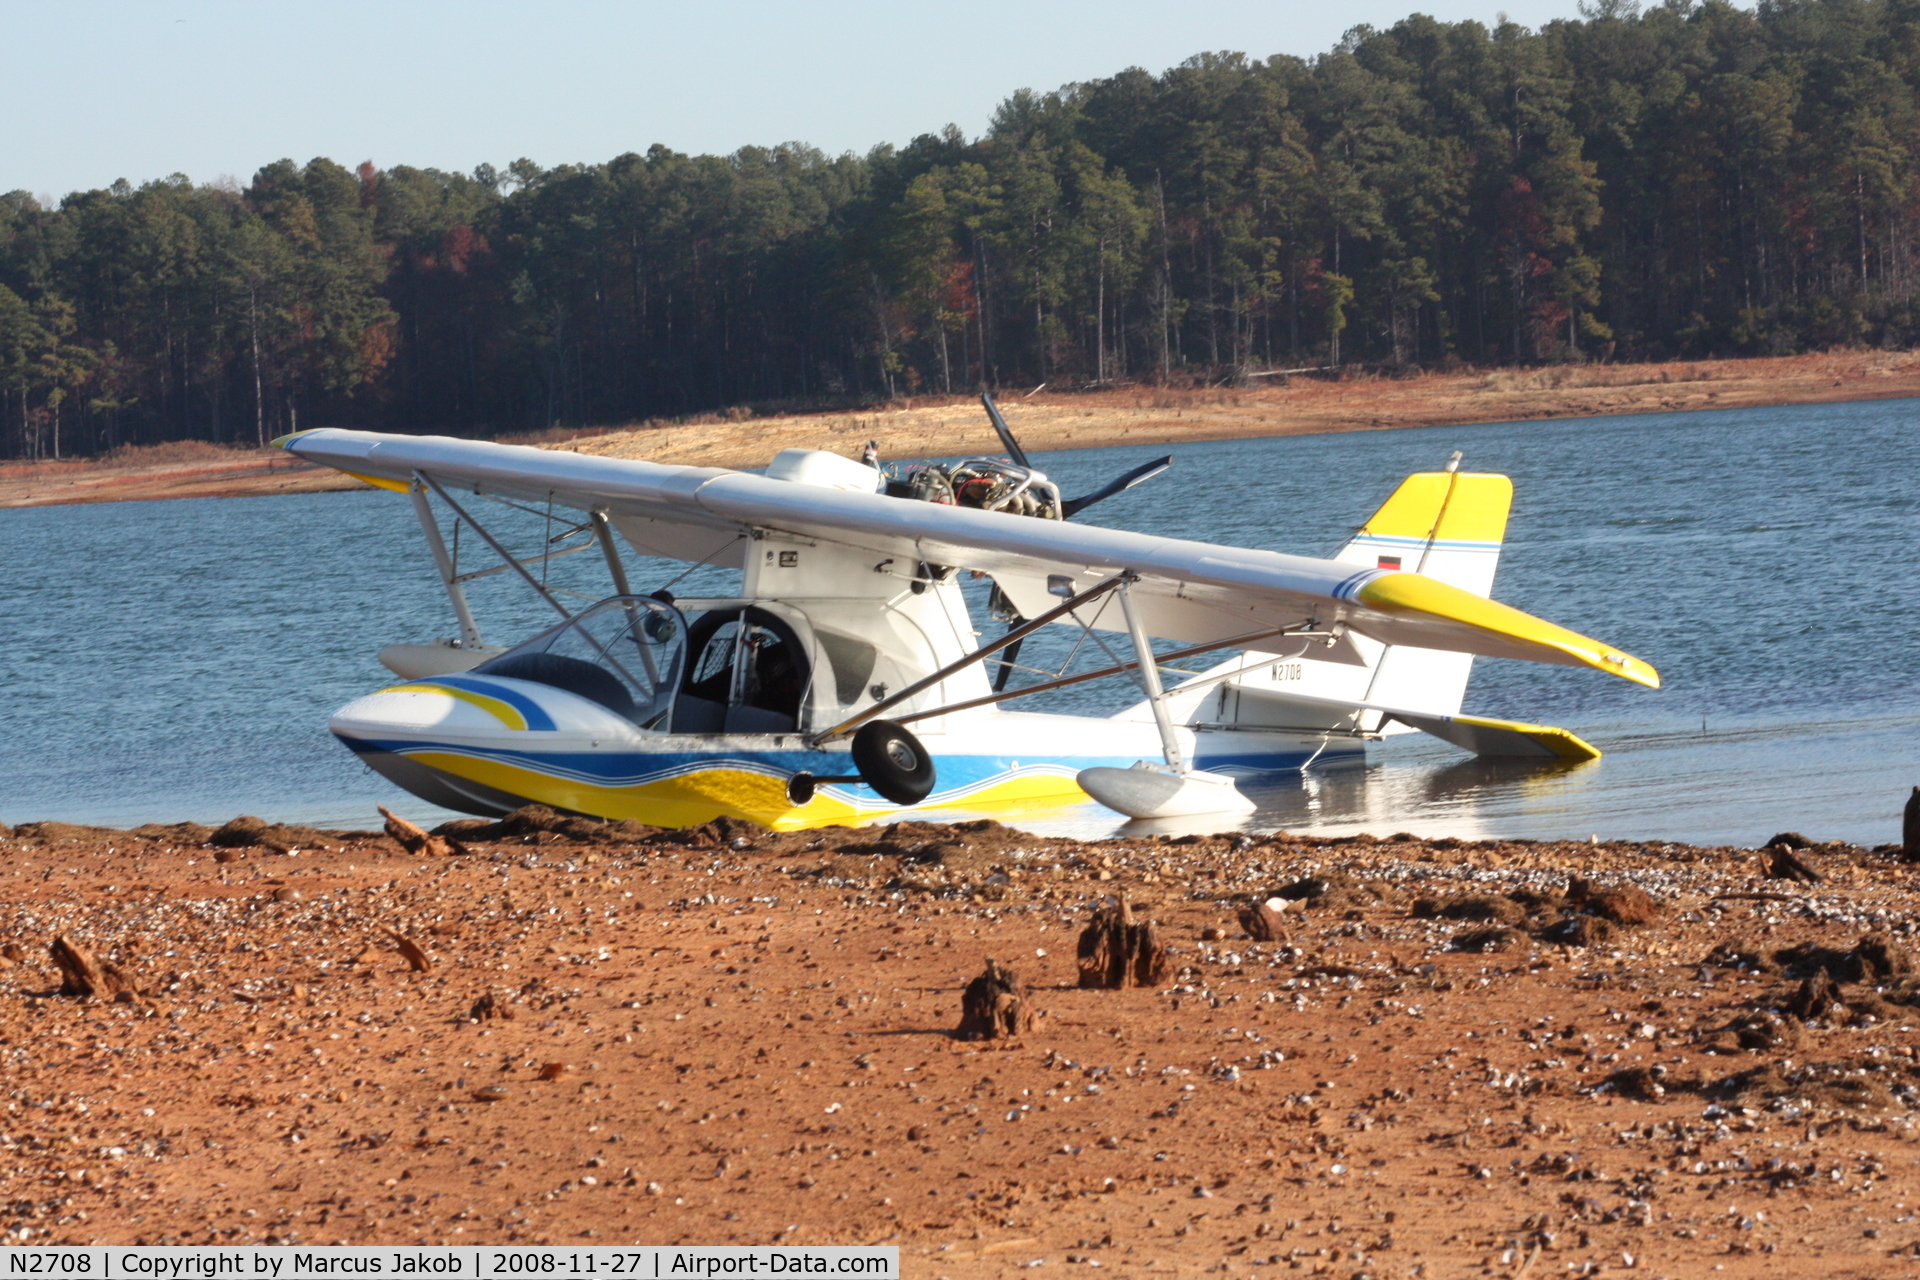 N2708, 2005 Progressive Aerodyne Searey C/N 001 (N2708), Searey N2708 @ clarks hill lake